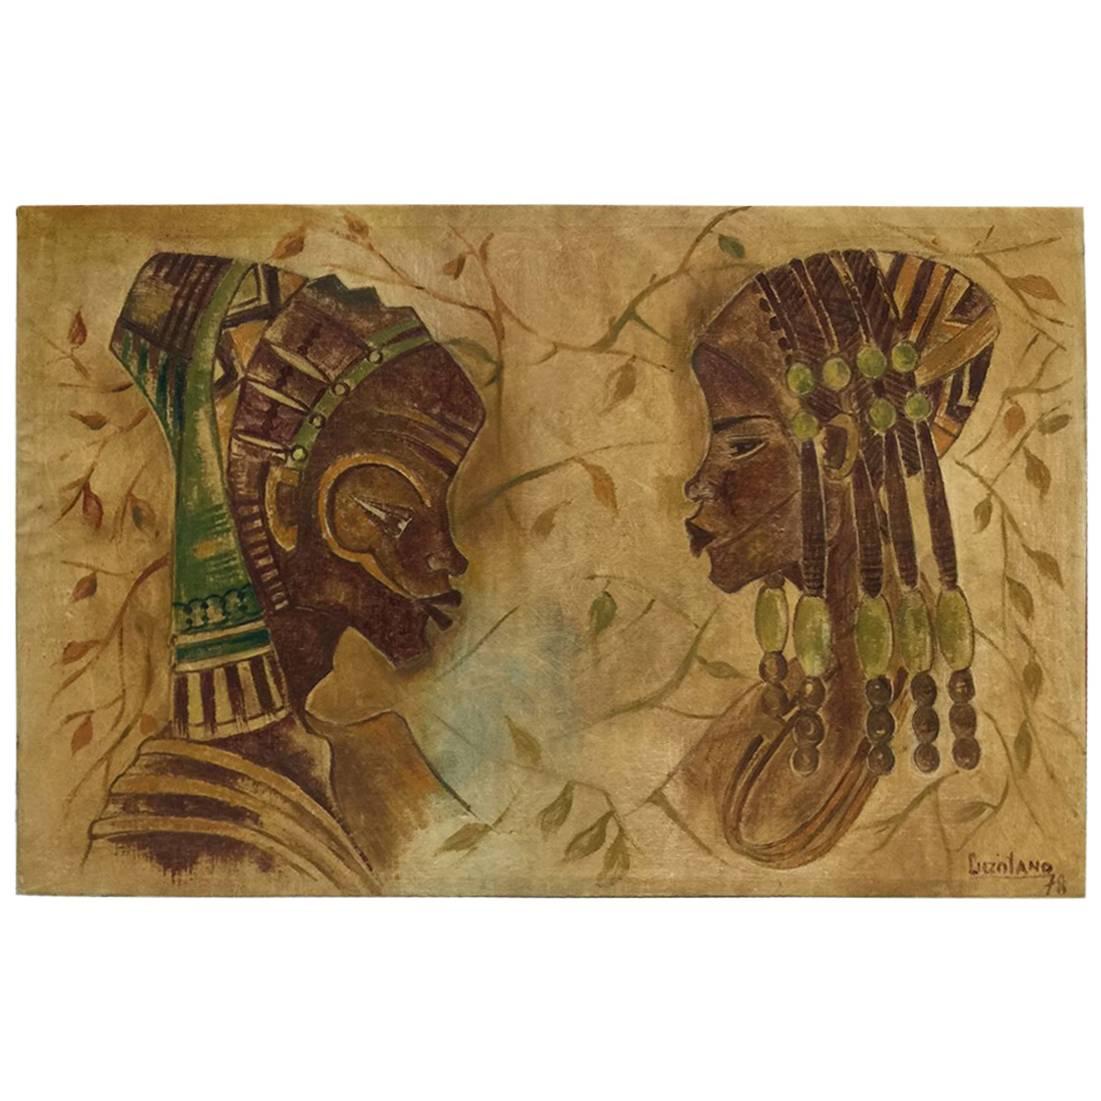 Afrikanische Kunst von Luzolano, Ölgemälde, 1978